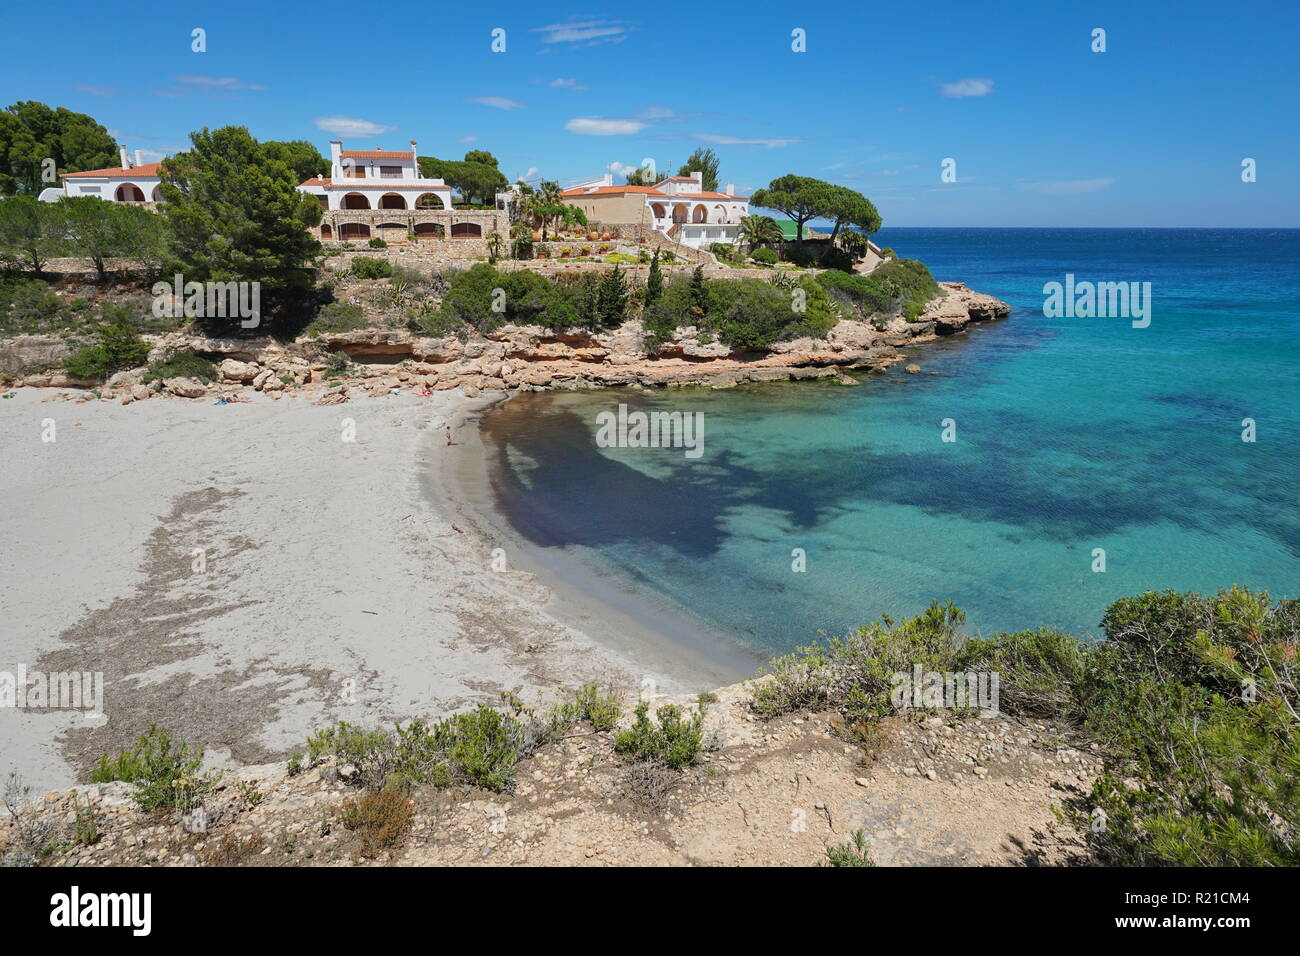 Crique méditerranéenne avec une plage de sable fin et les maisons sur la Costa Dorada en Espagne, Cala Estany tort, la Catalogne, L'Ametlla de Mar, Tarragona Banque D'Images